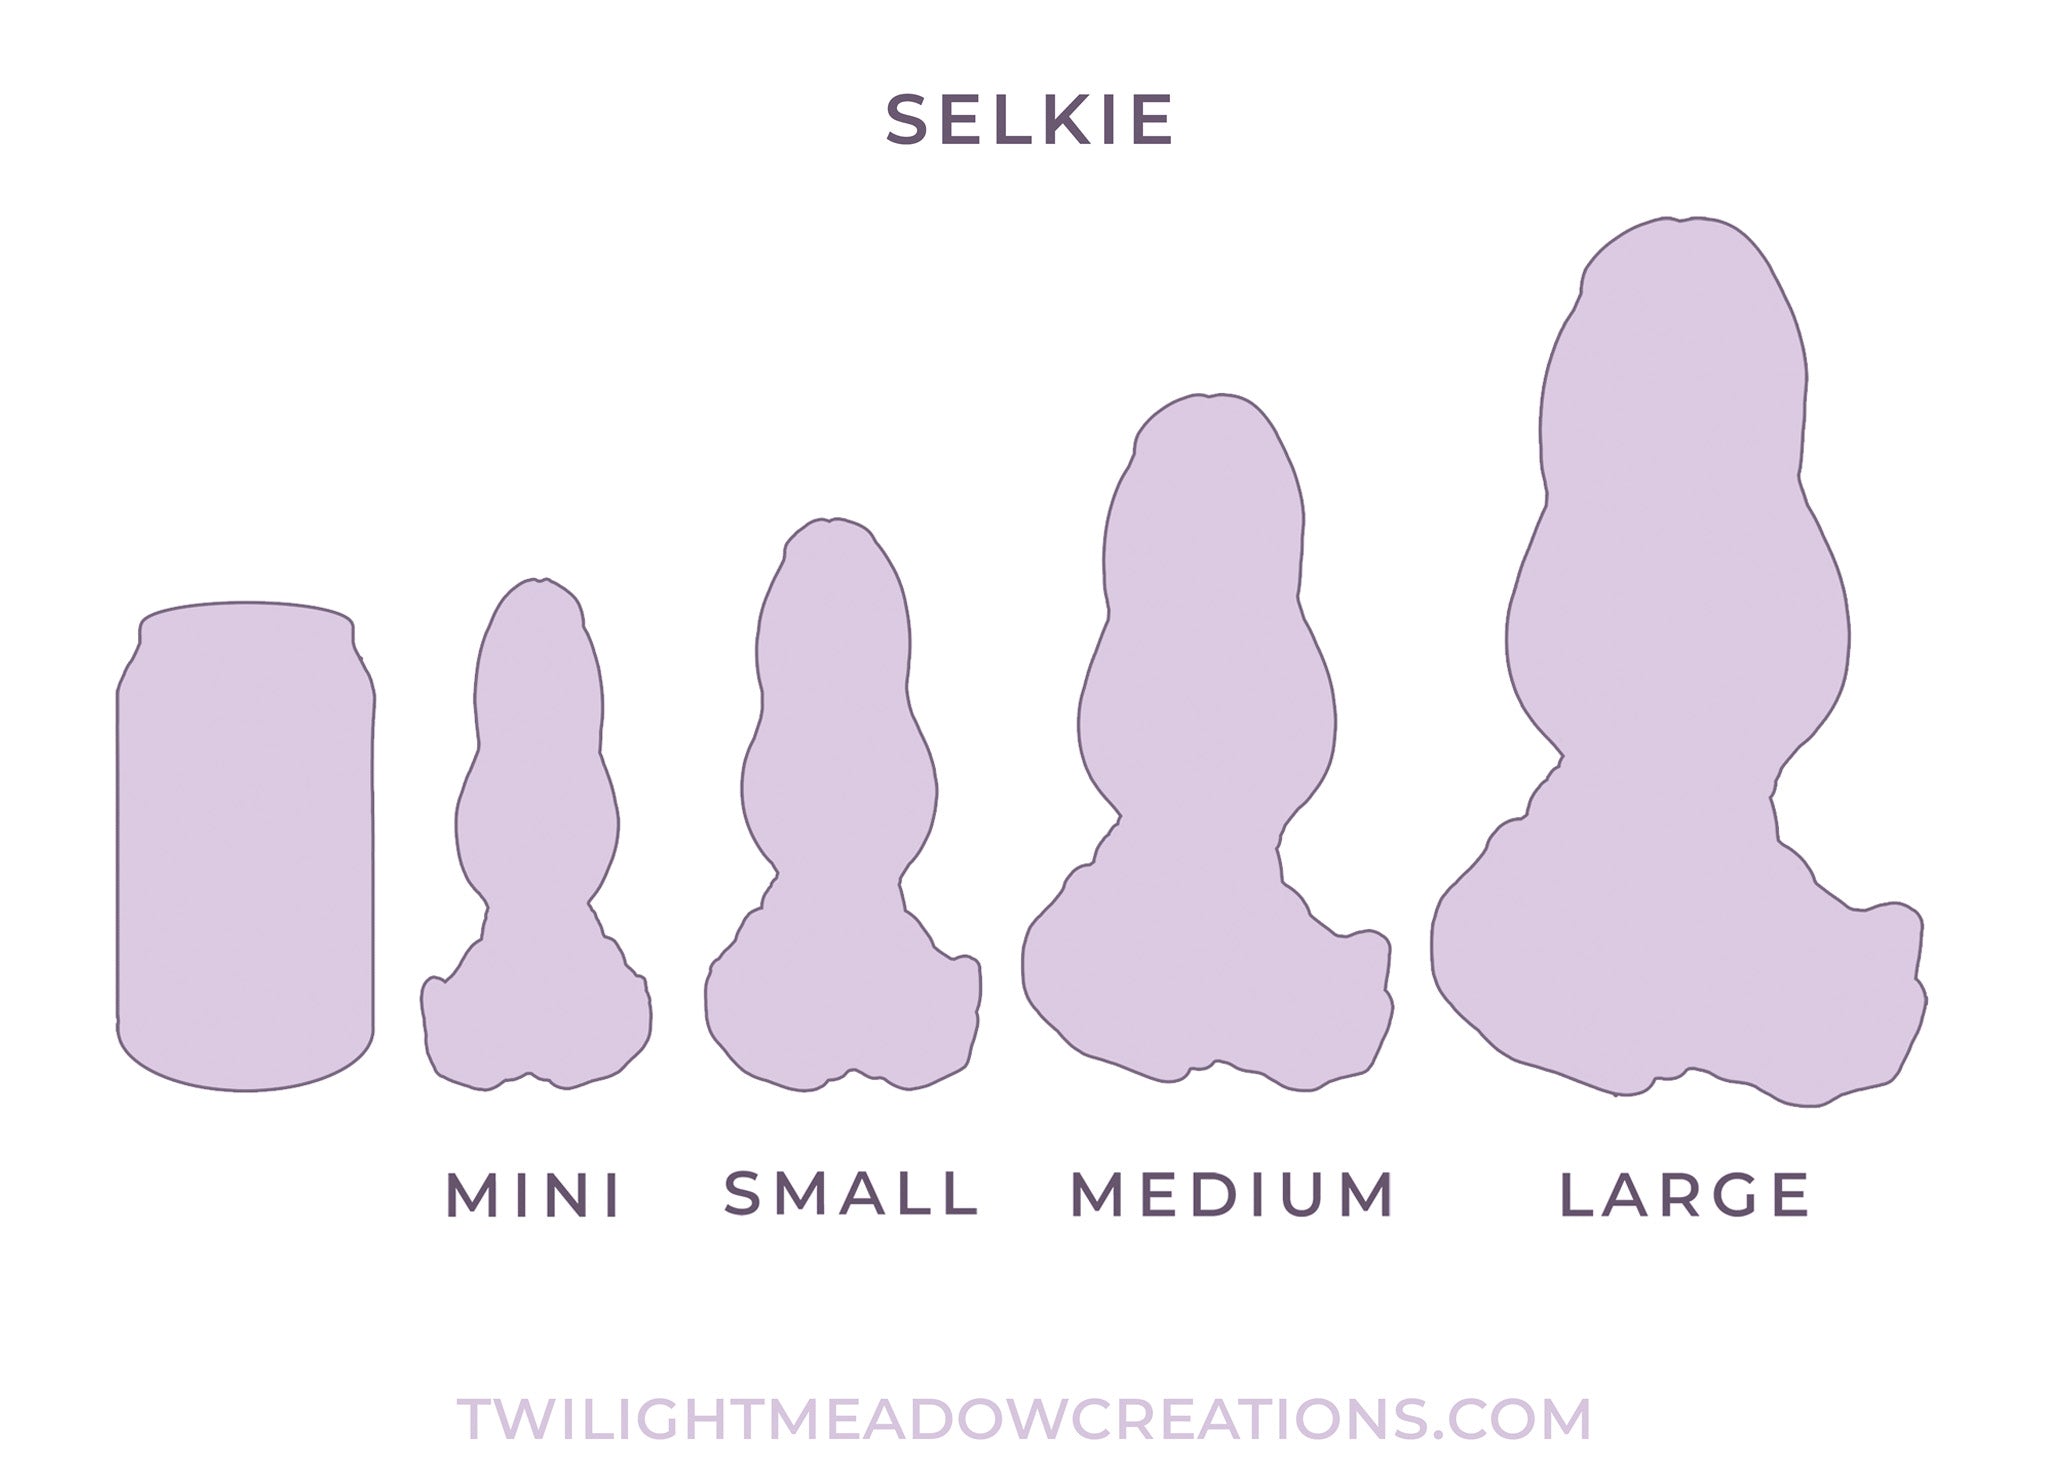 Mini Selkie (Firmness: Extra Soft)